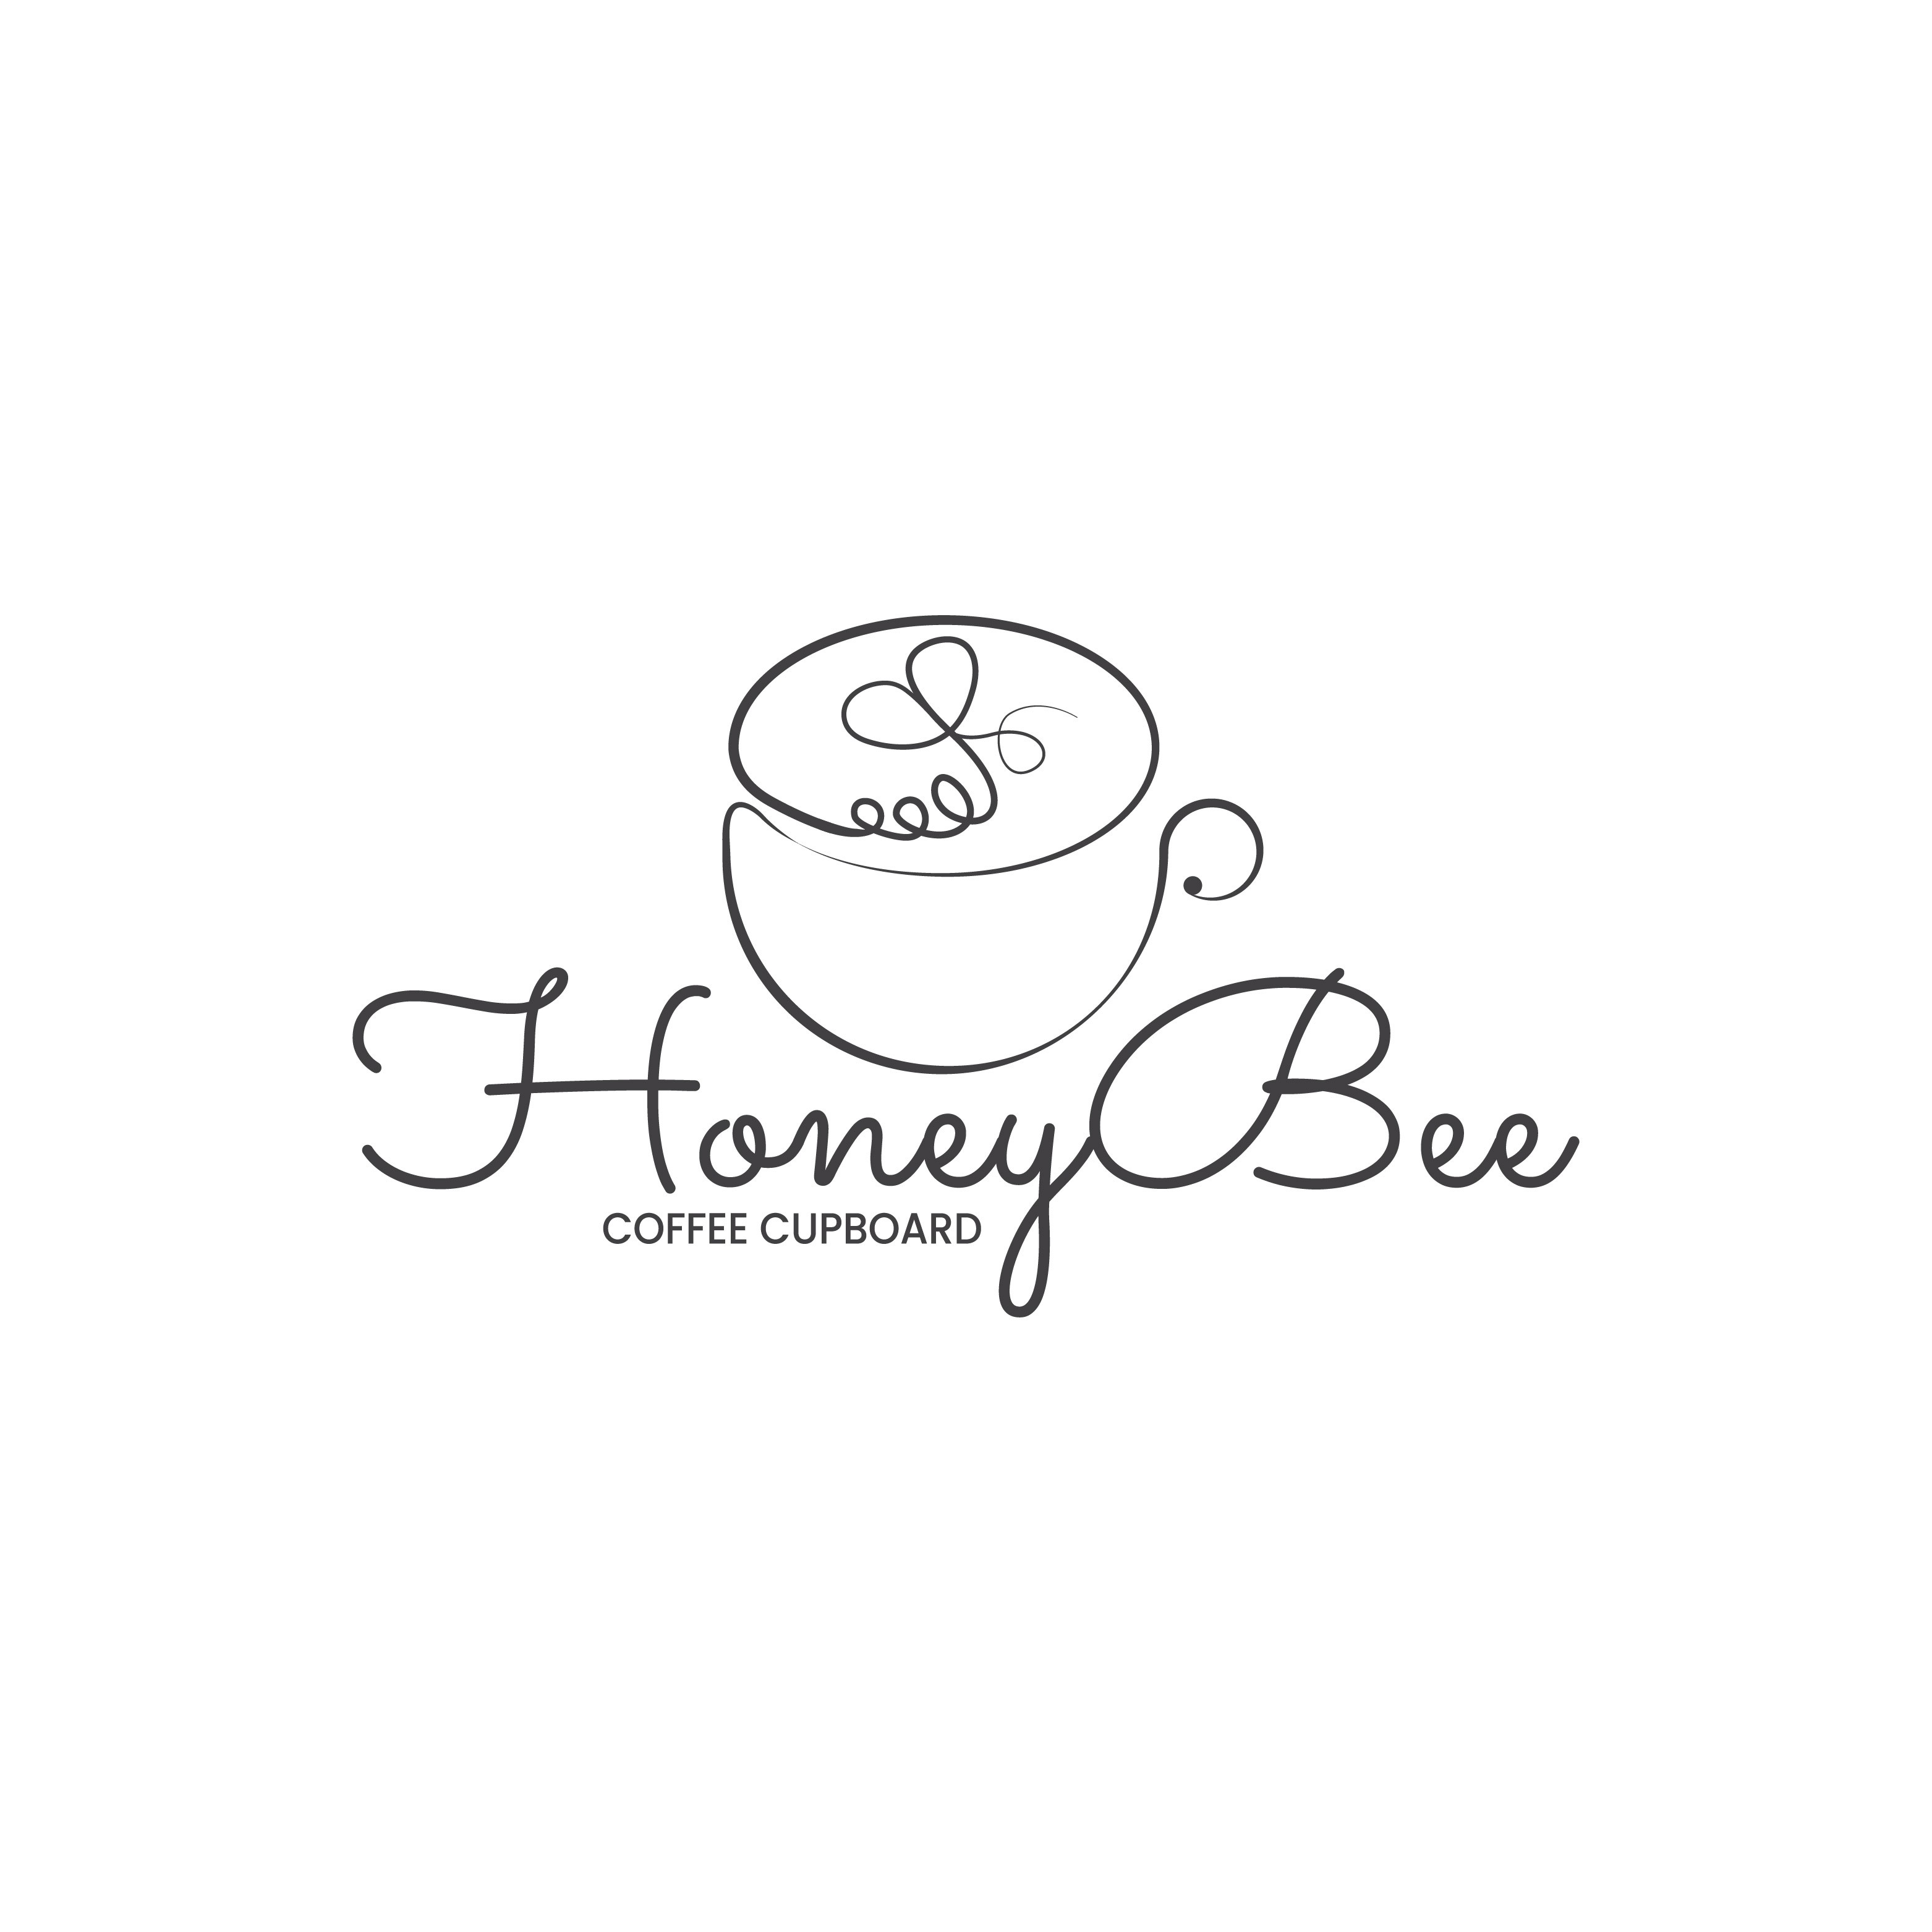 Honeybee Coffee Cupboard 143 Public Square